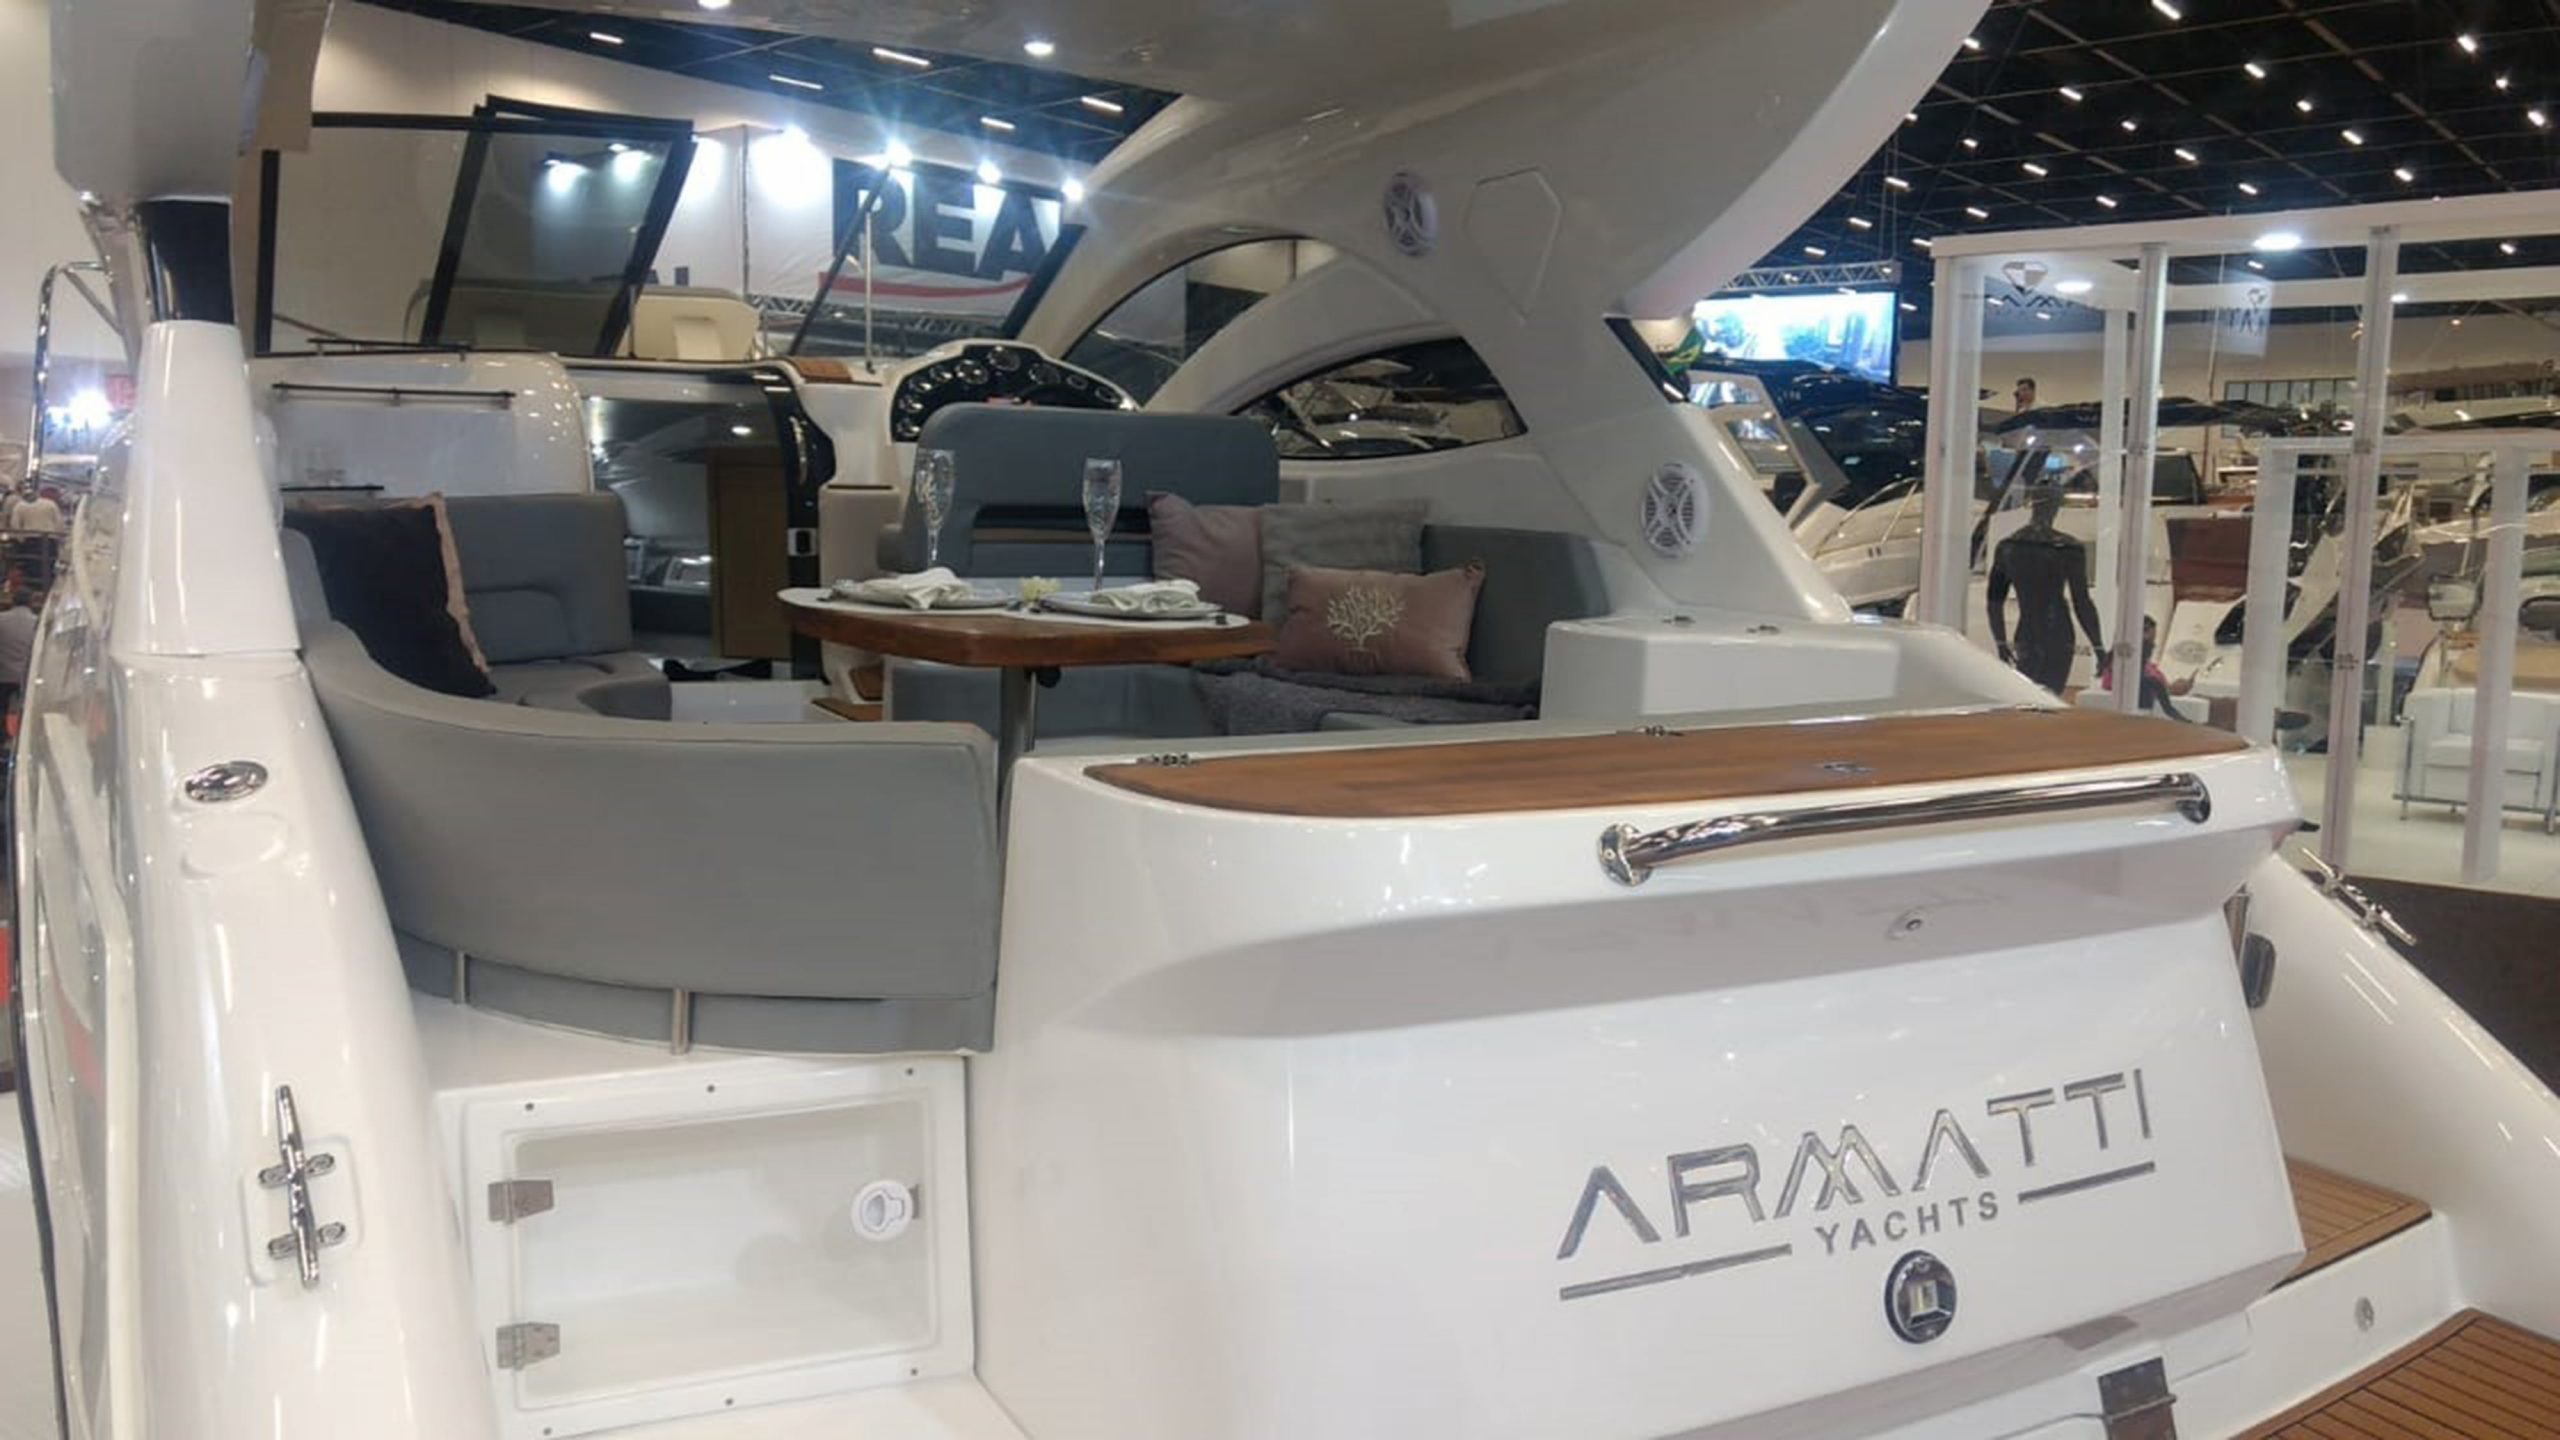 Armatti 370 Coupé barco - boat shopping